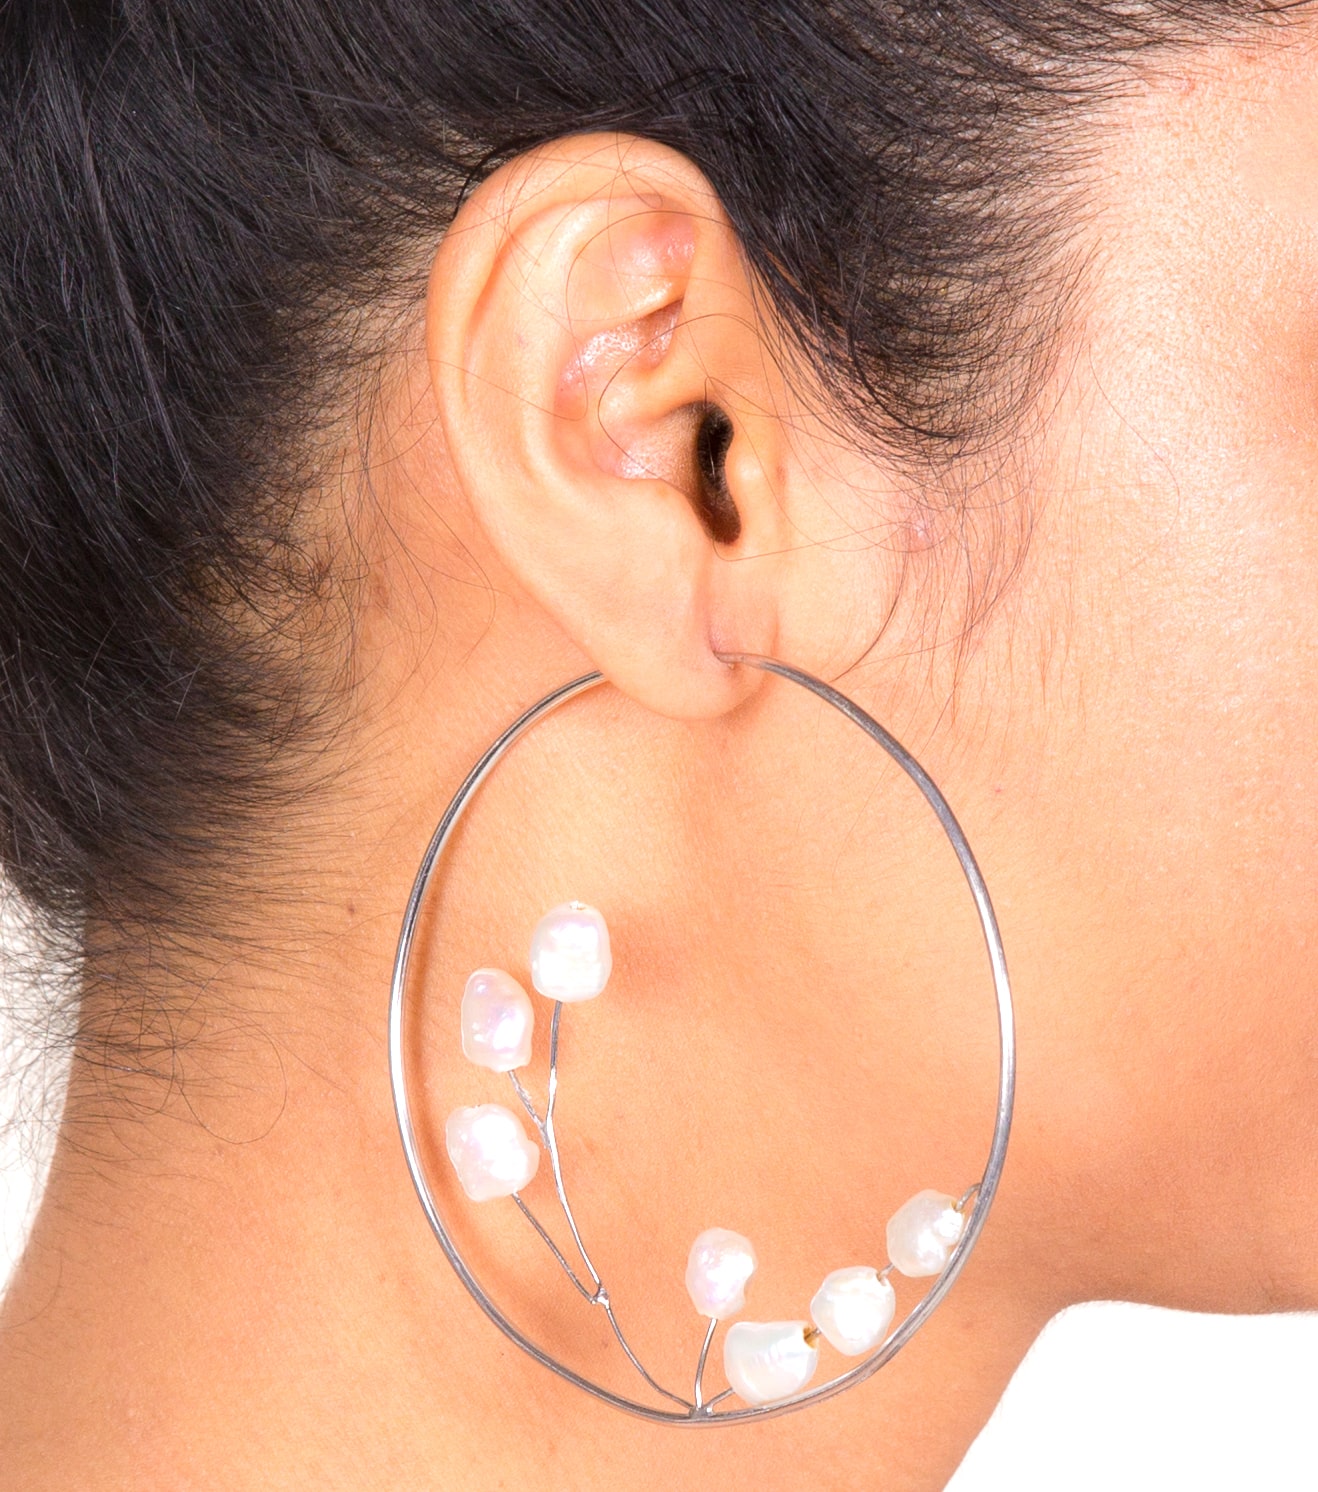 types of earrings - hoops